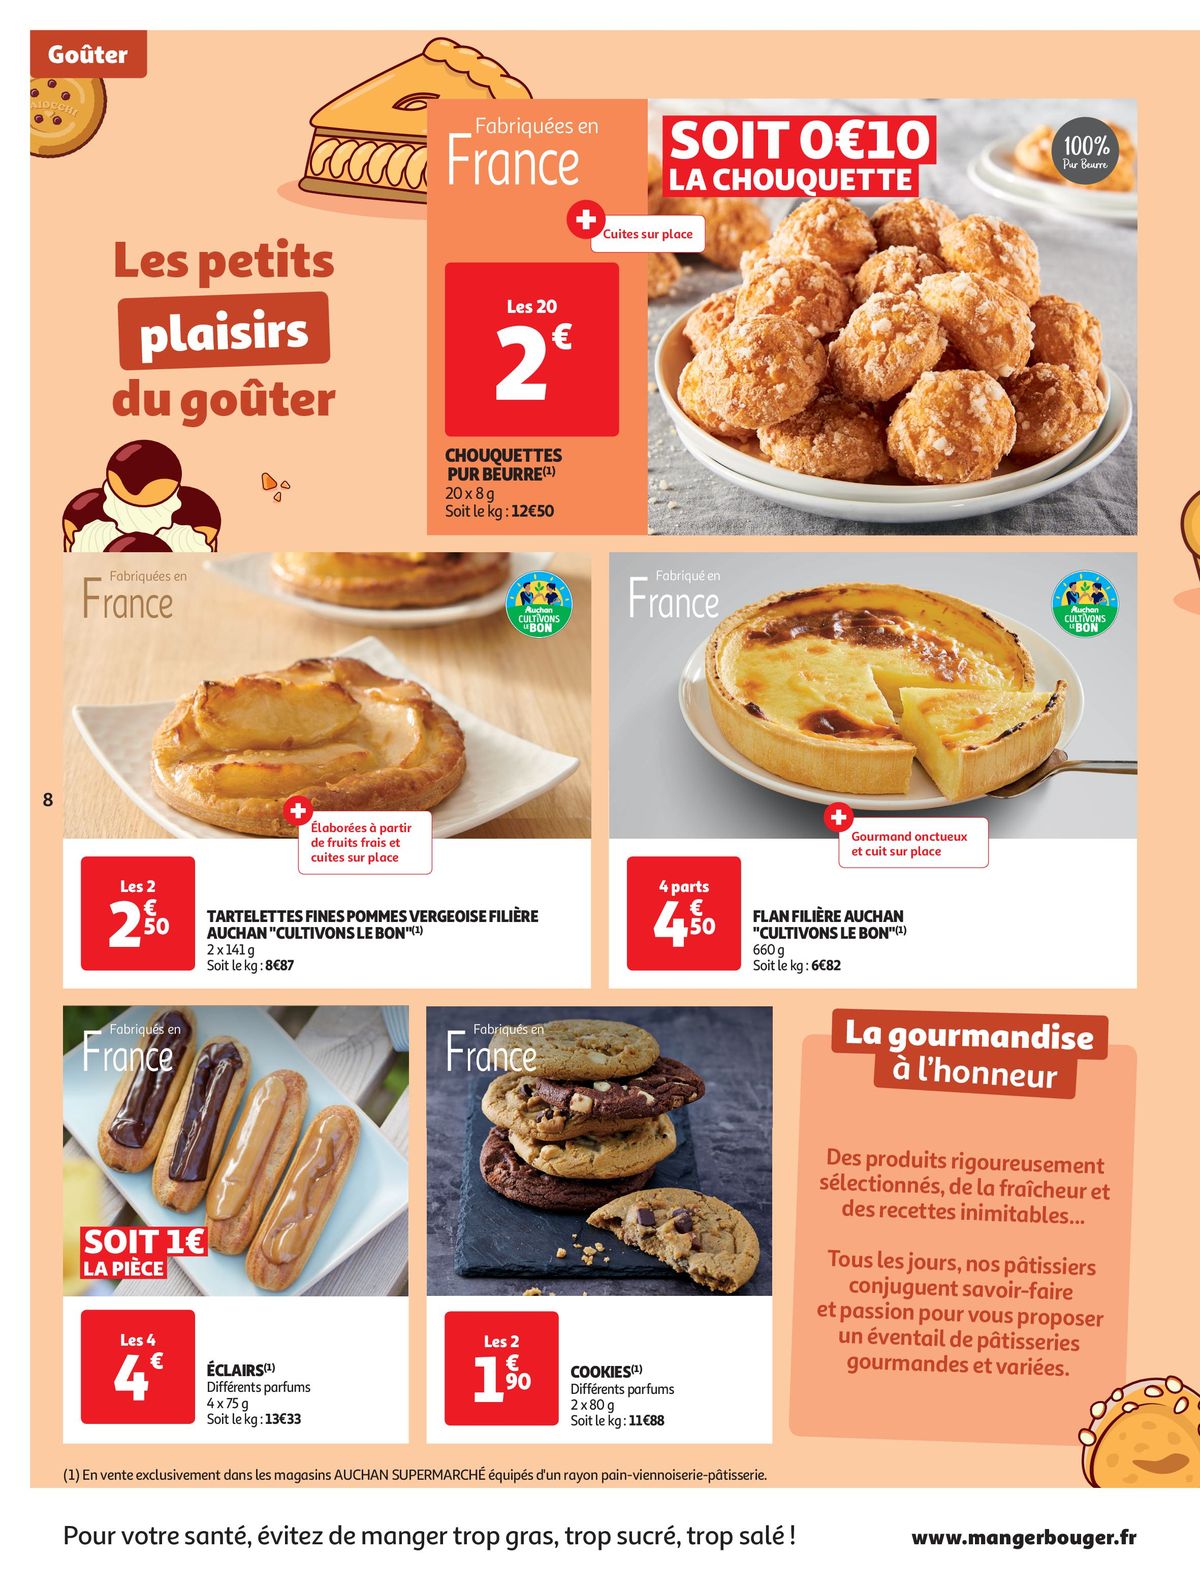 Catalogue Spécial Cuisine Gourmane dans votre supermarché, page 00008